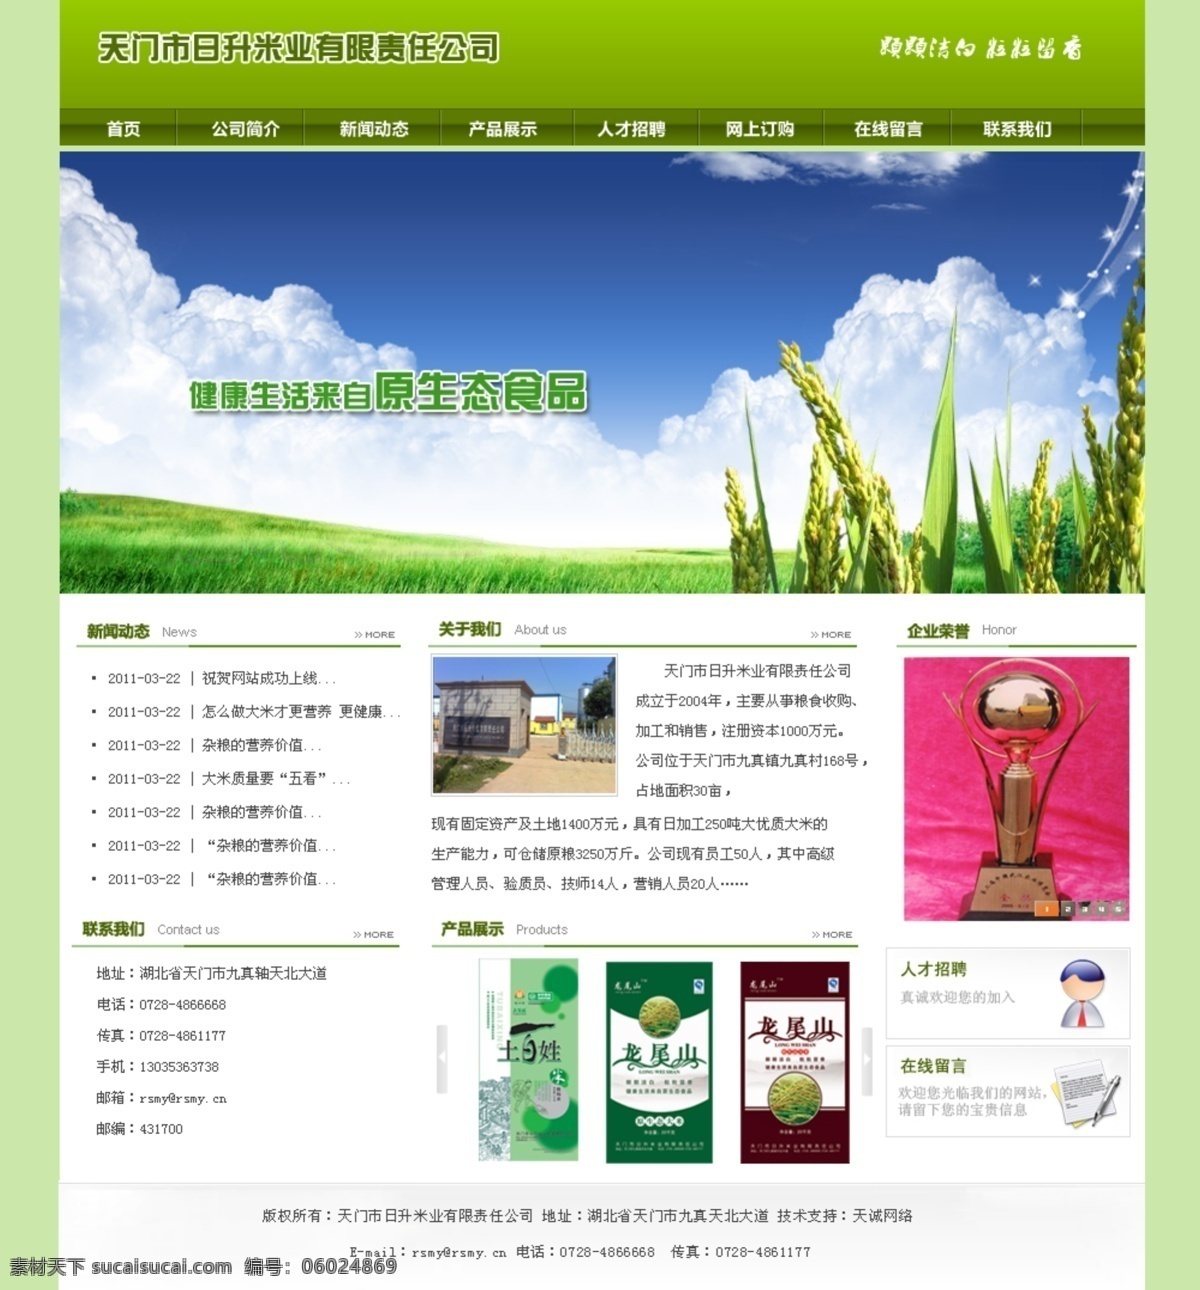 米业 网页模板 健康 绿色 天然 网站模板 源文件 中文模版 米业网页模板 网页素材